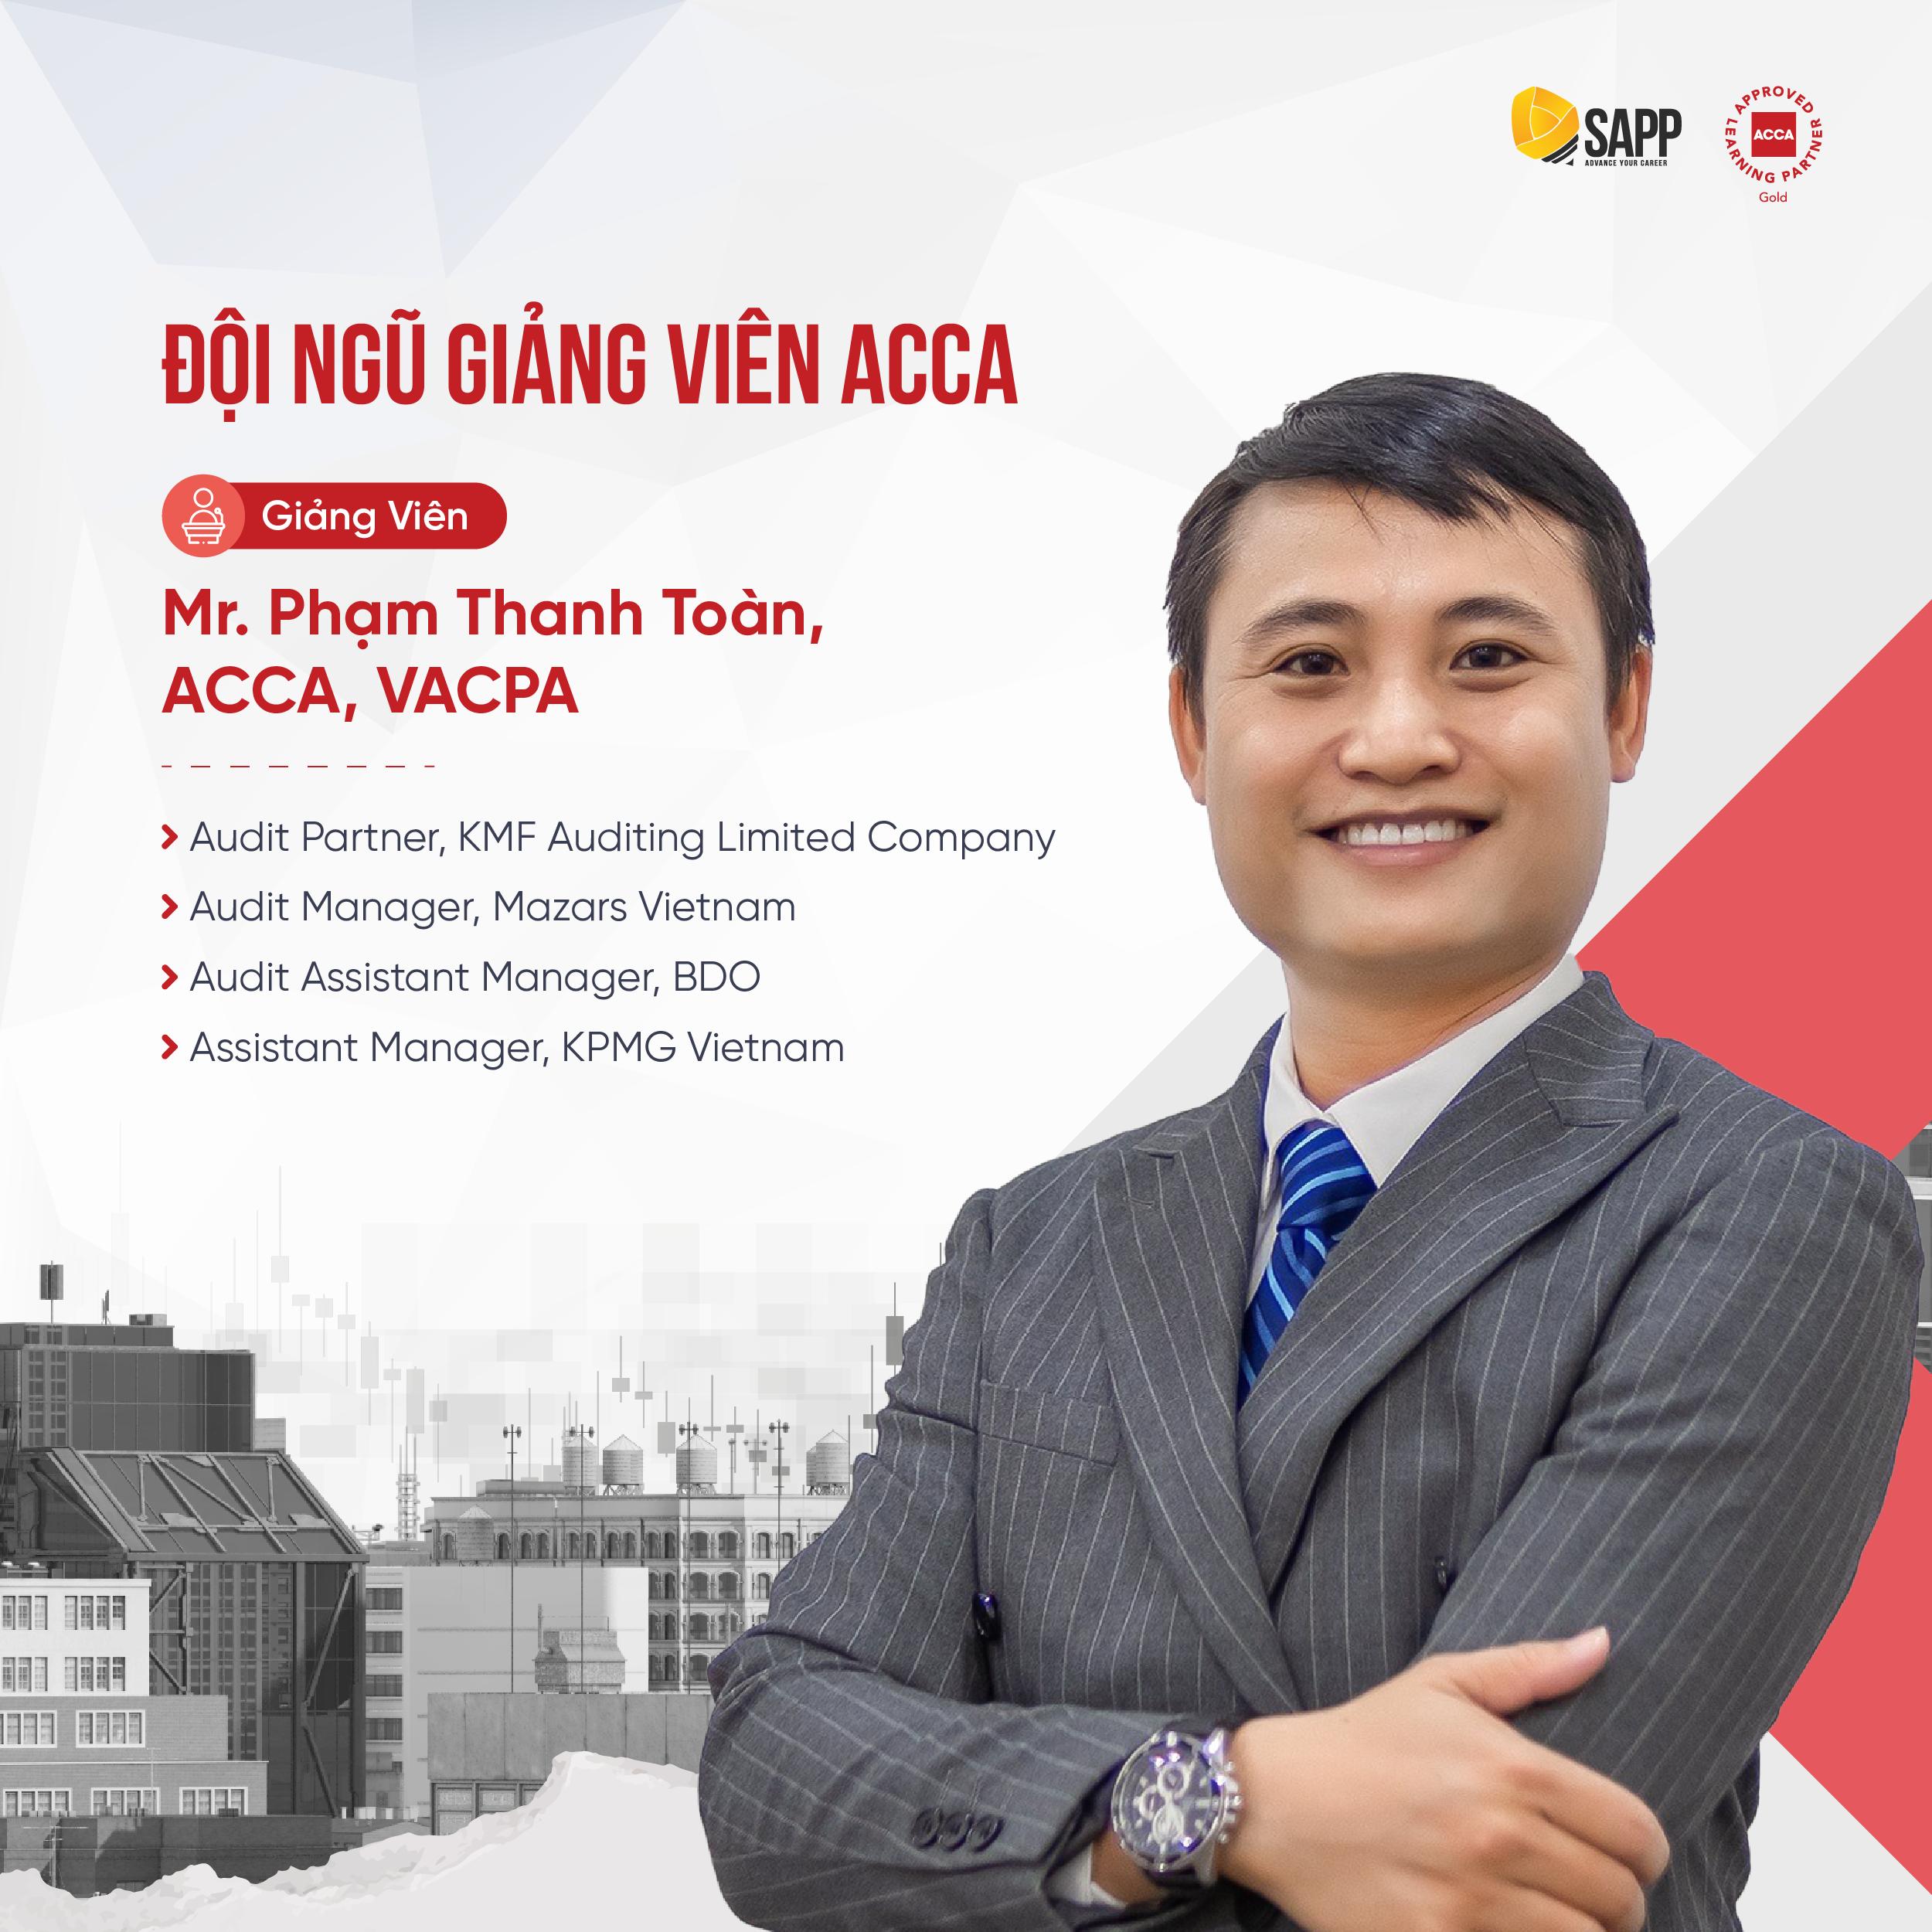  Phạm Thanh Toàn, ACCA, VACPA, CMA